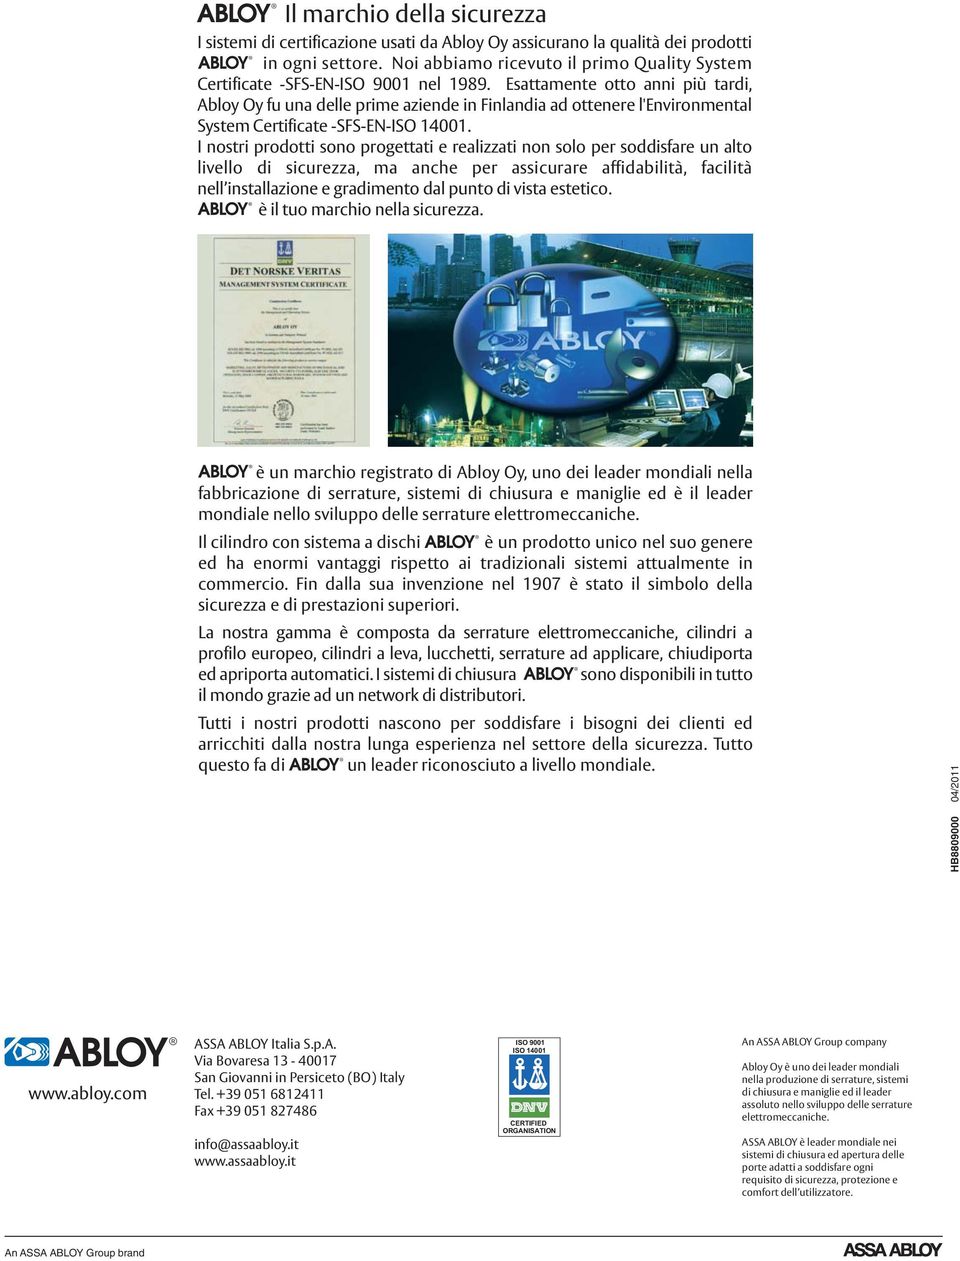 Esattamente otto anni più tardi, Abloy Oy fu una delle prime aziende in Finlandia ad ottenere l'environmental System Certificate -SFS-EN-ISO 14001.